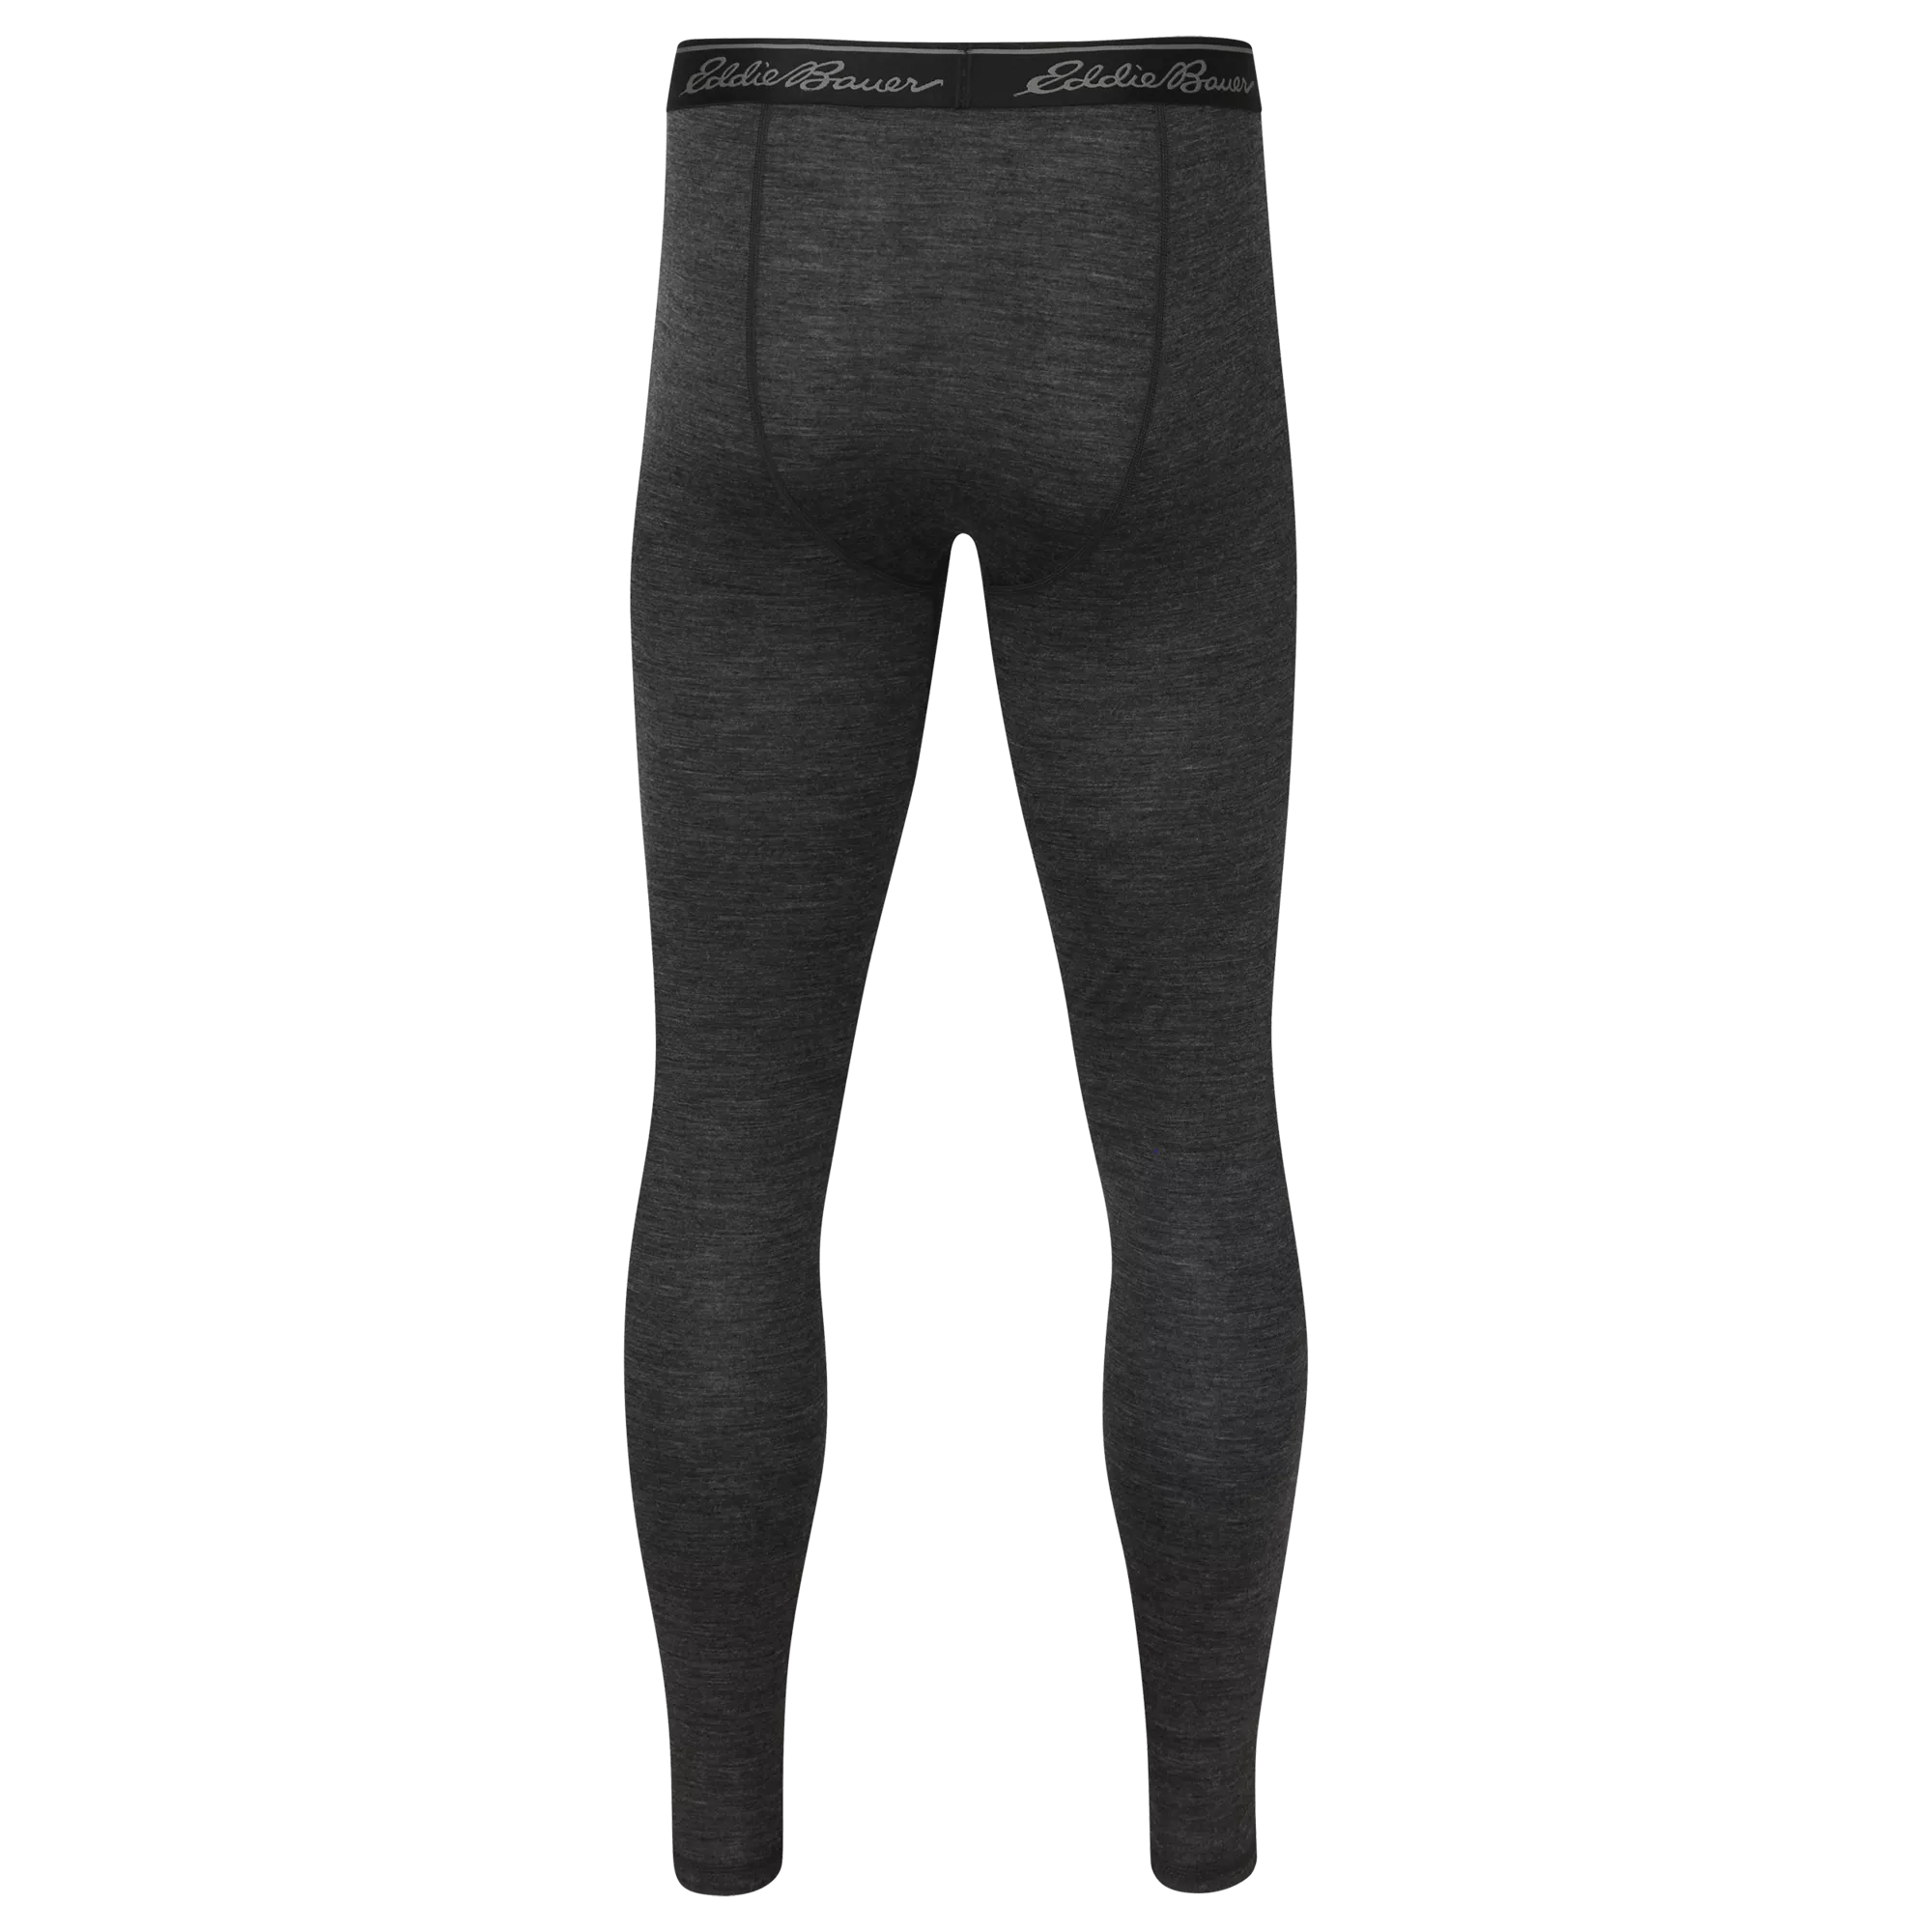 Lightweight Merino-Blend Baselayer Pants